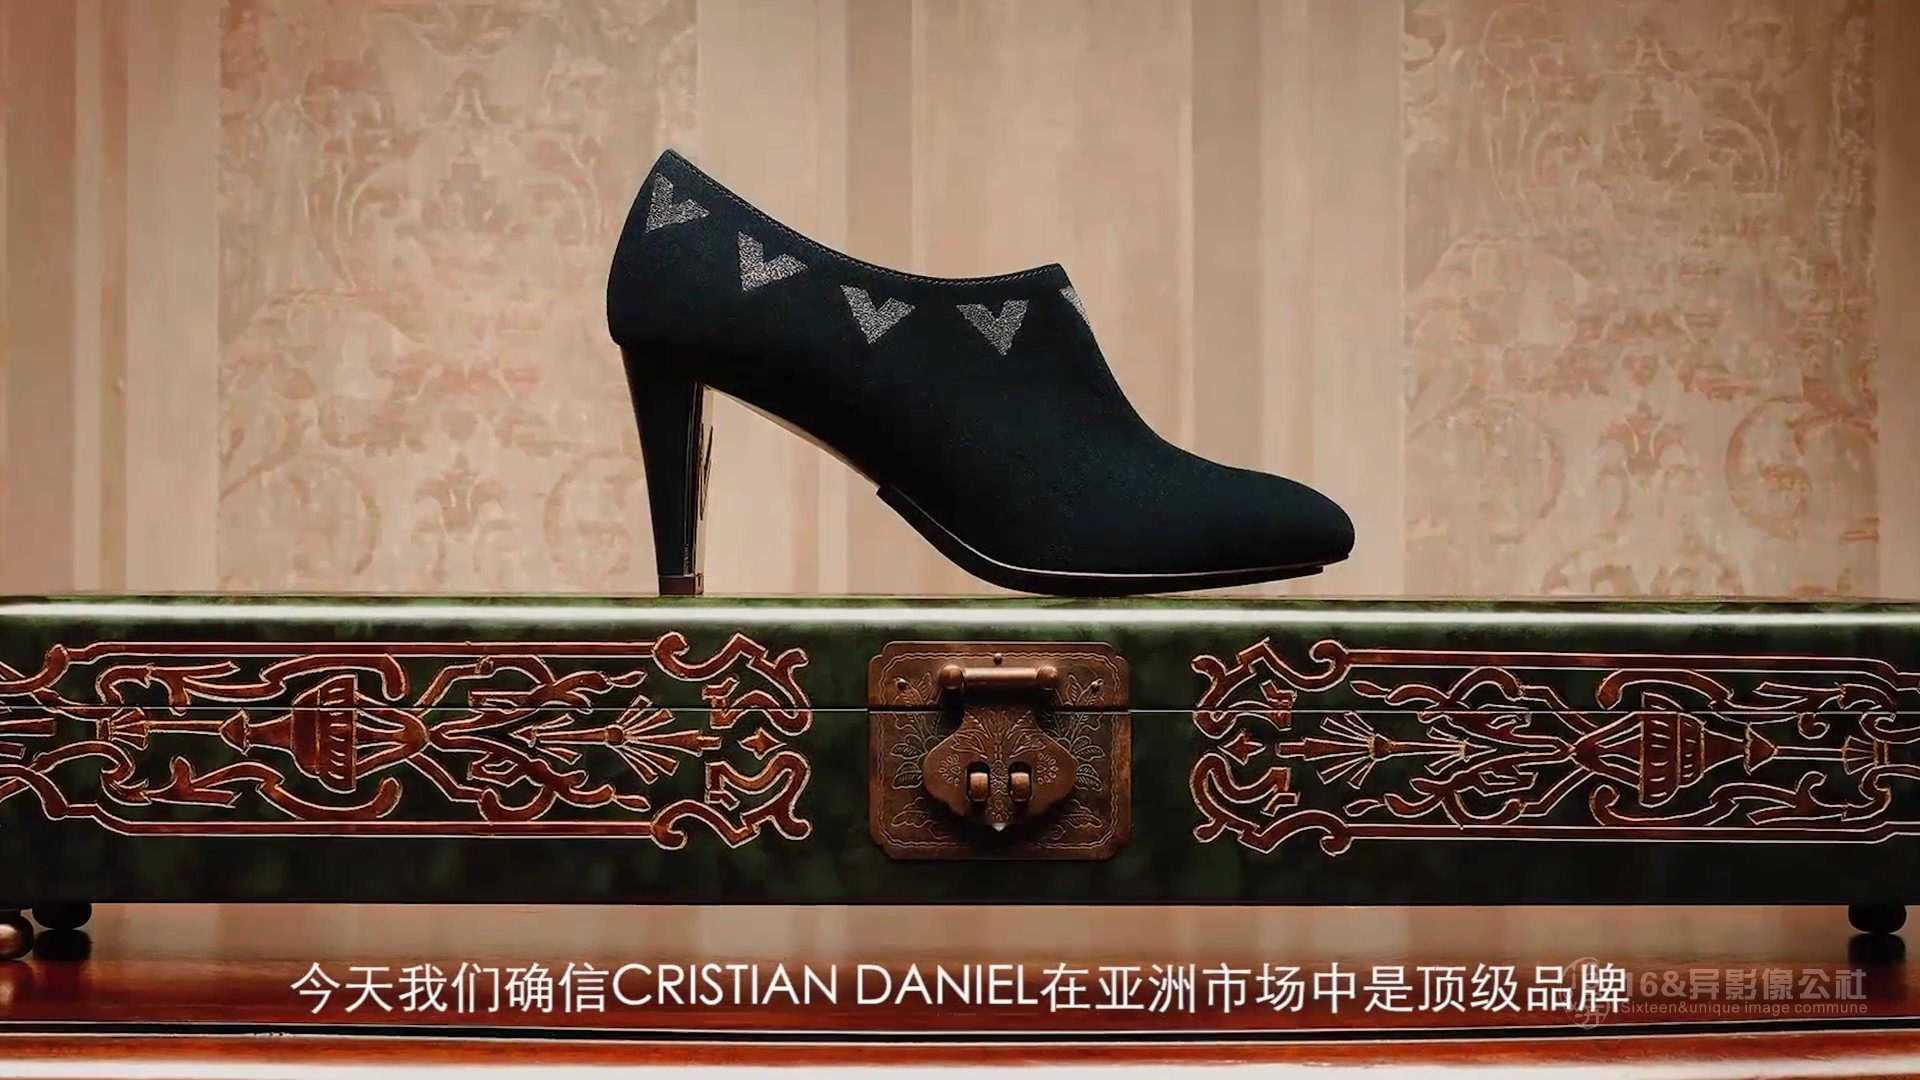 十六异一双手工皮鞋的诞生五百年的工匠精神传承